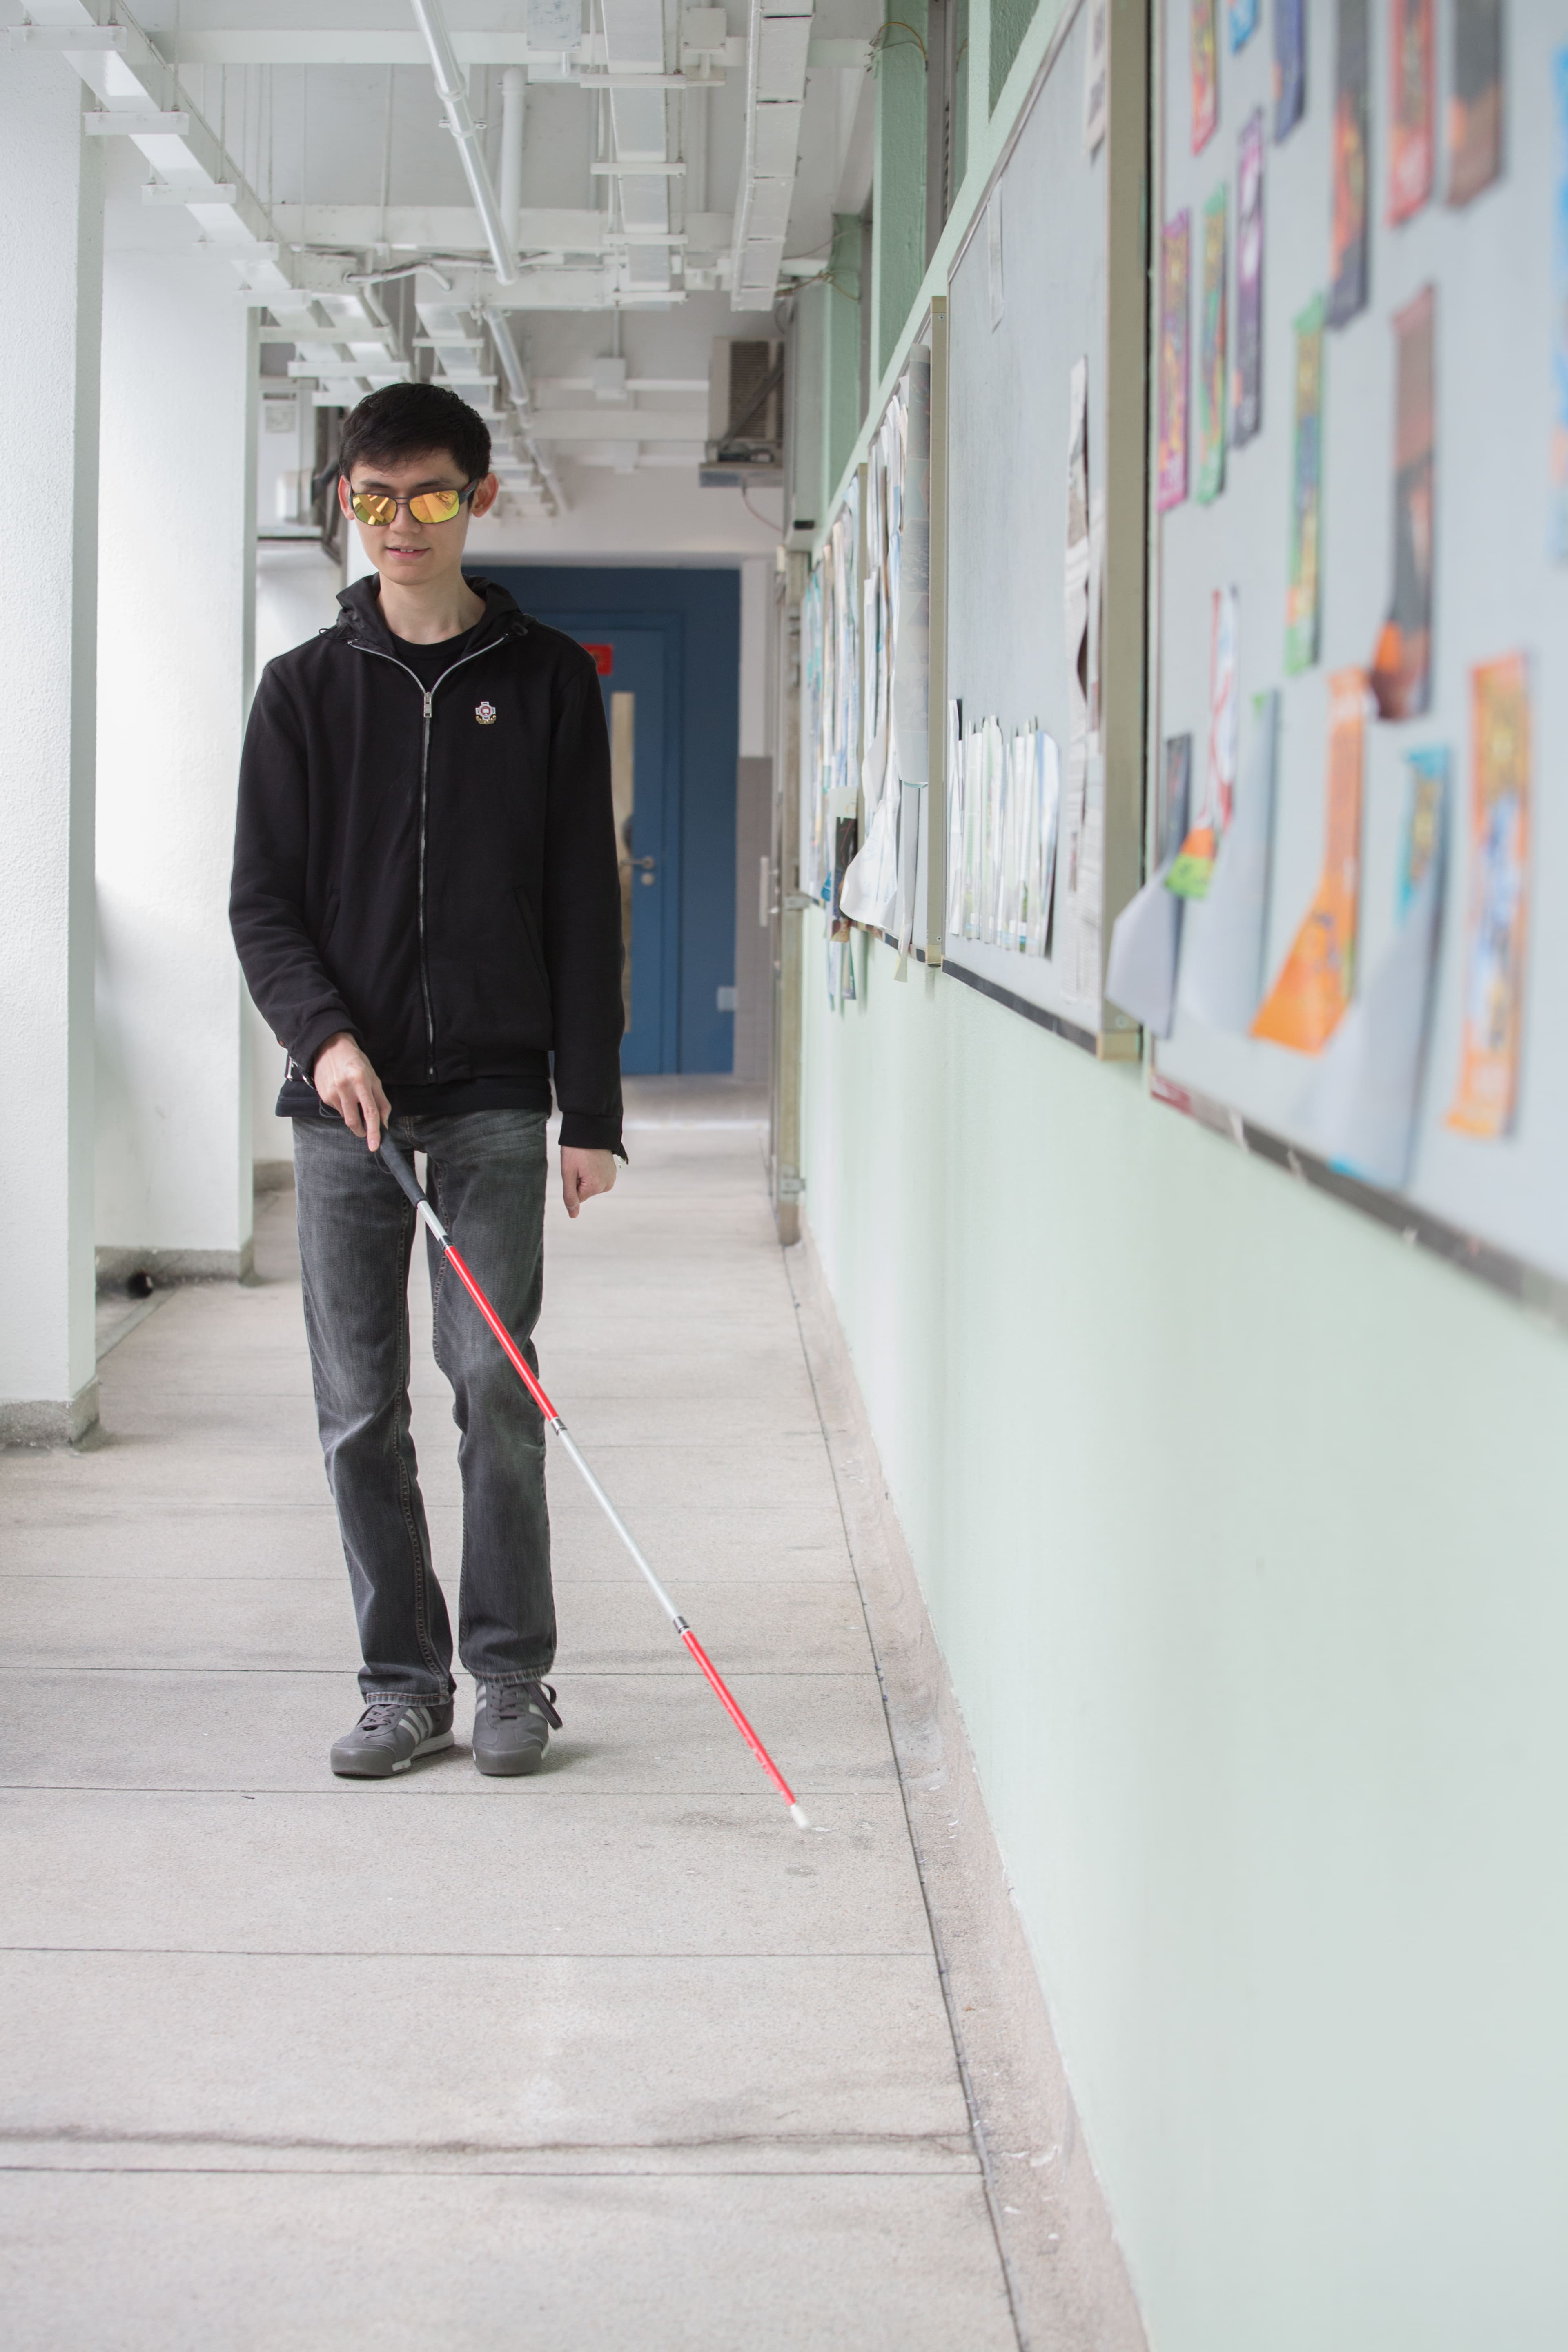 認路，對視障學生而言是一項挑戰。特別是中學的課程很多時都會在特別室上課，他們只能在同學協助下走過一遍又一遍，讓自己記得不同的路線。